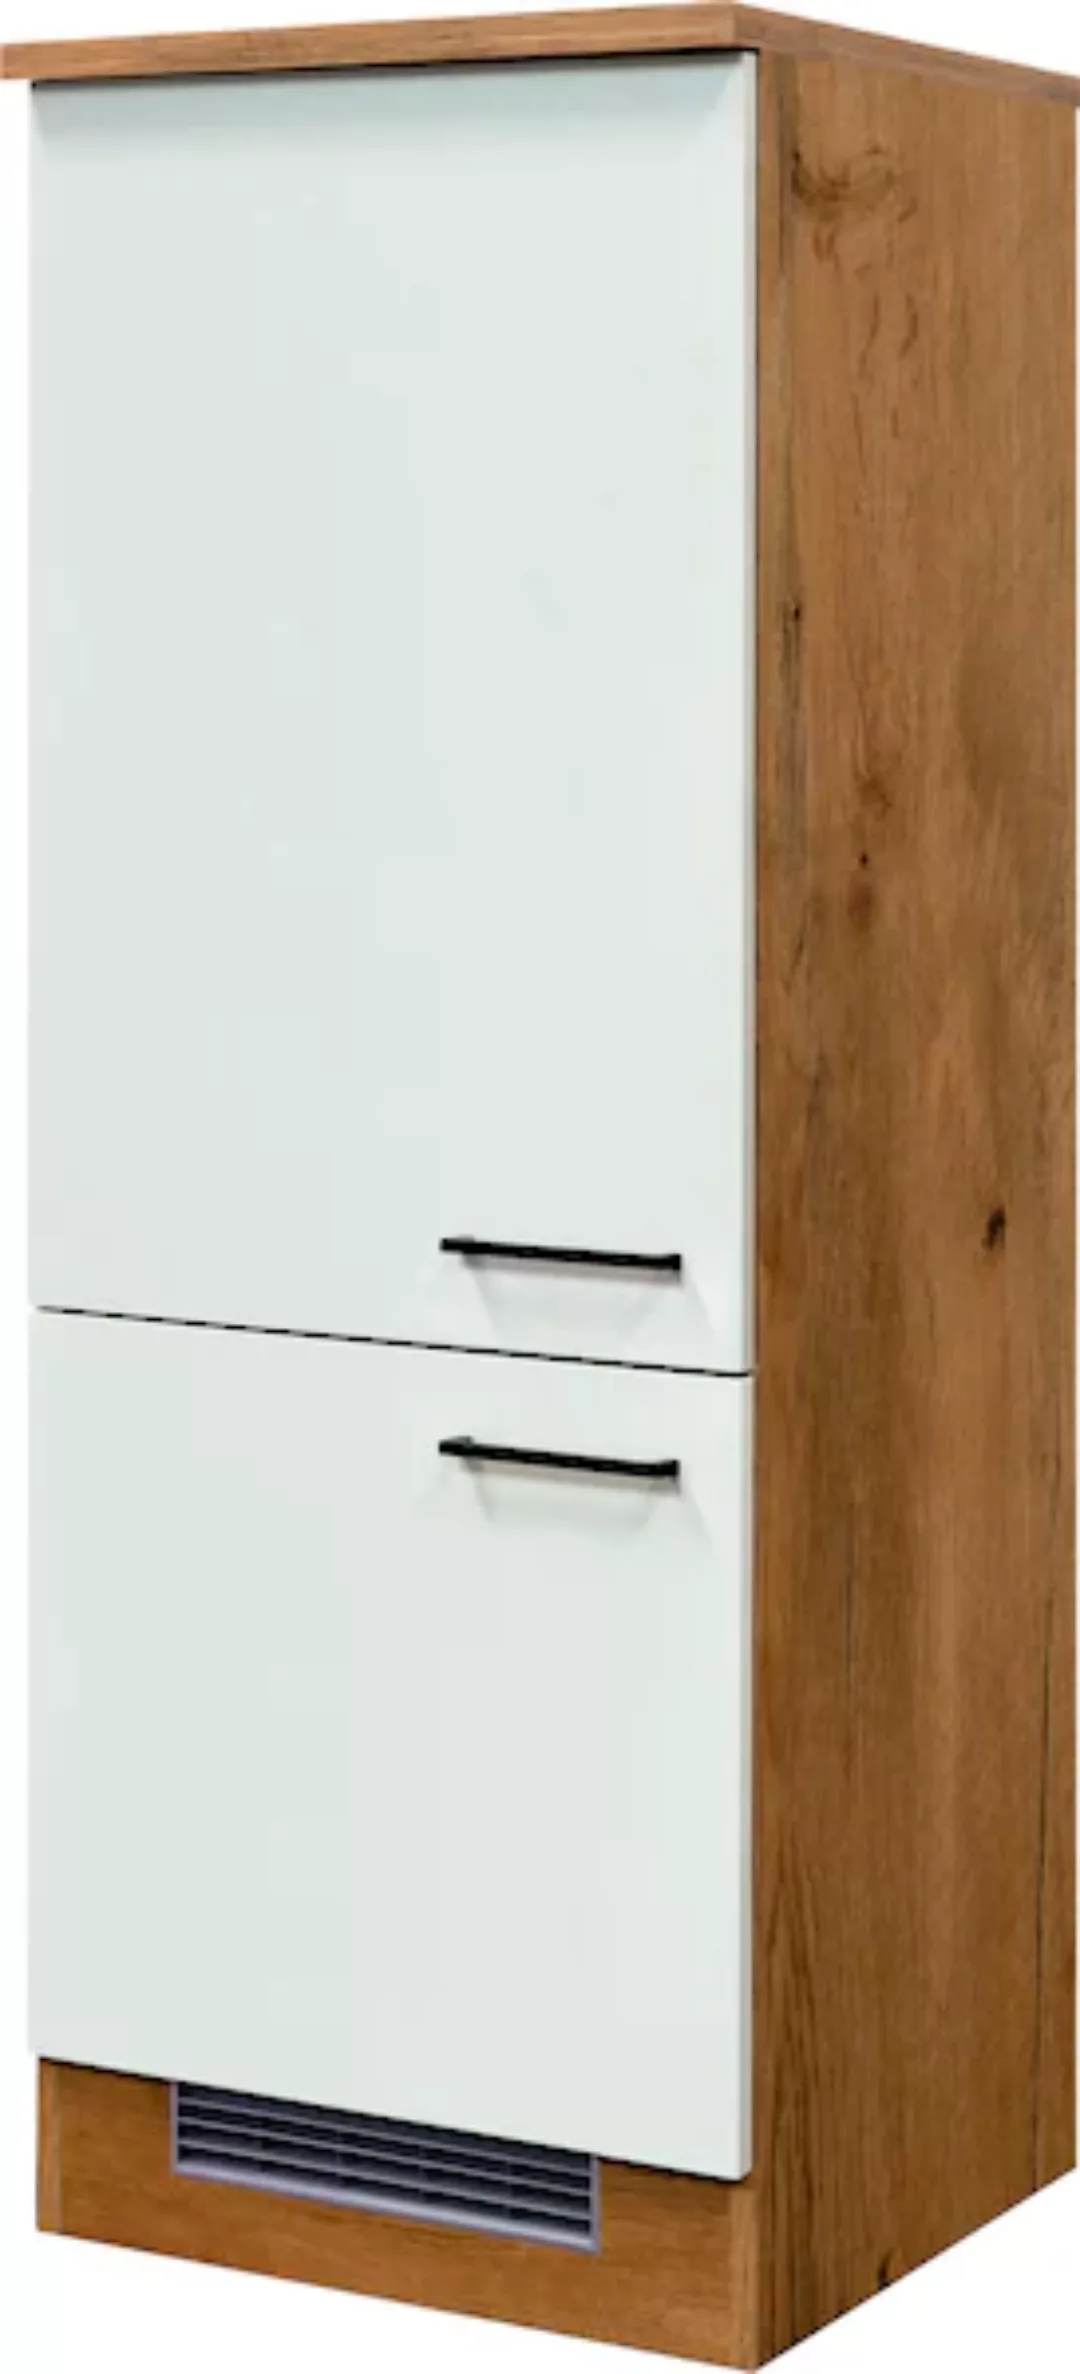 Flex-Well Küche "Vintea", 60 cm breit, inklusive Kühlschrank günstig online kaufen